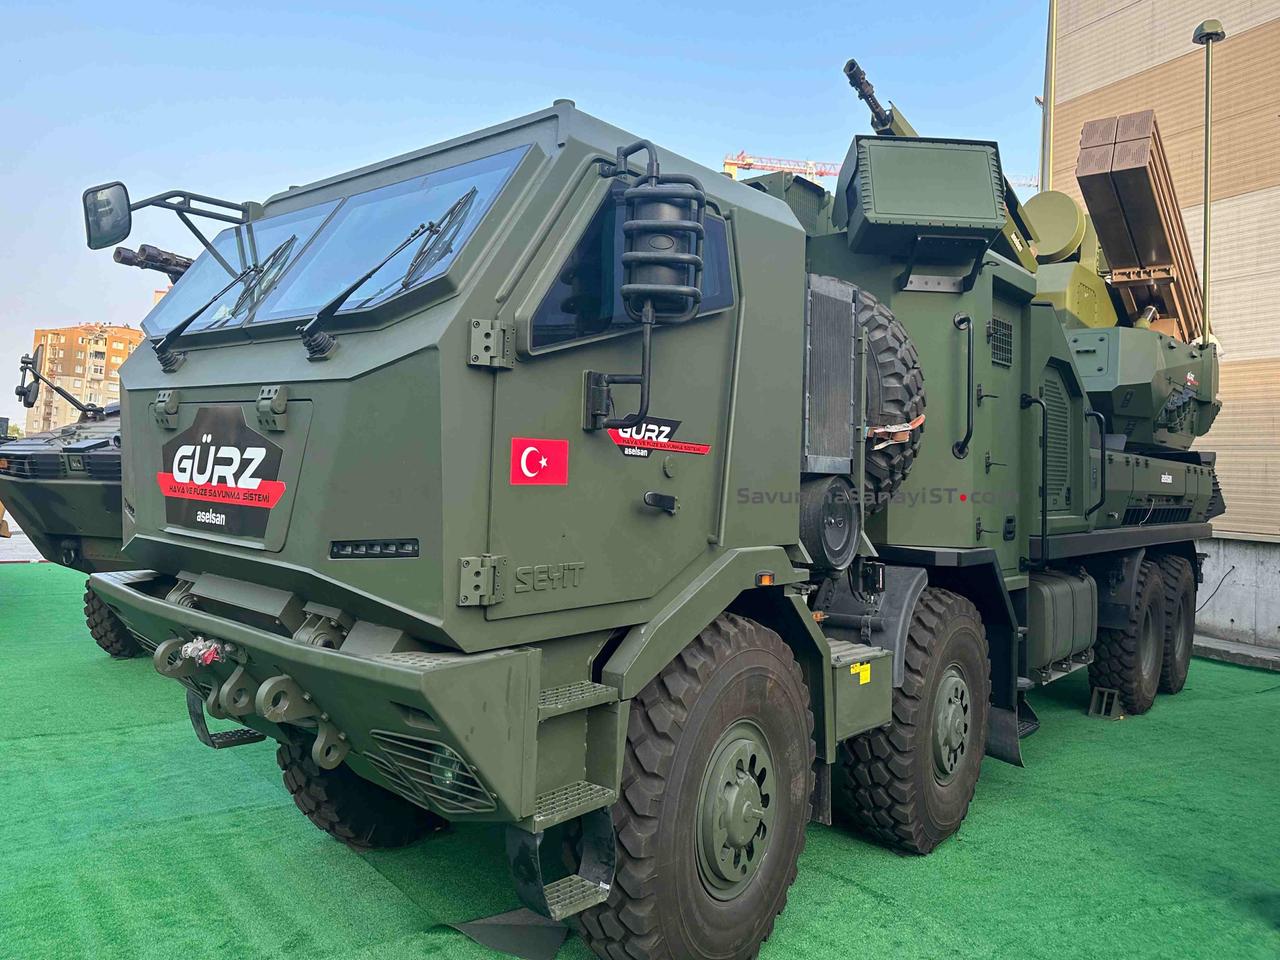 Компания Aselsan продемонстрировала ракетно-артиллерийский комплекс GÜRZ для противодействия воздушным угрозам